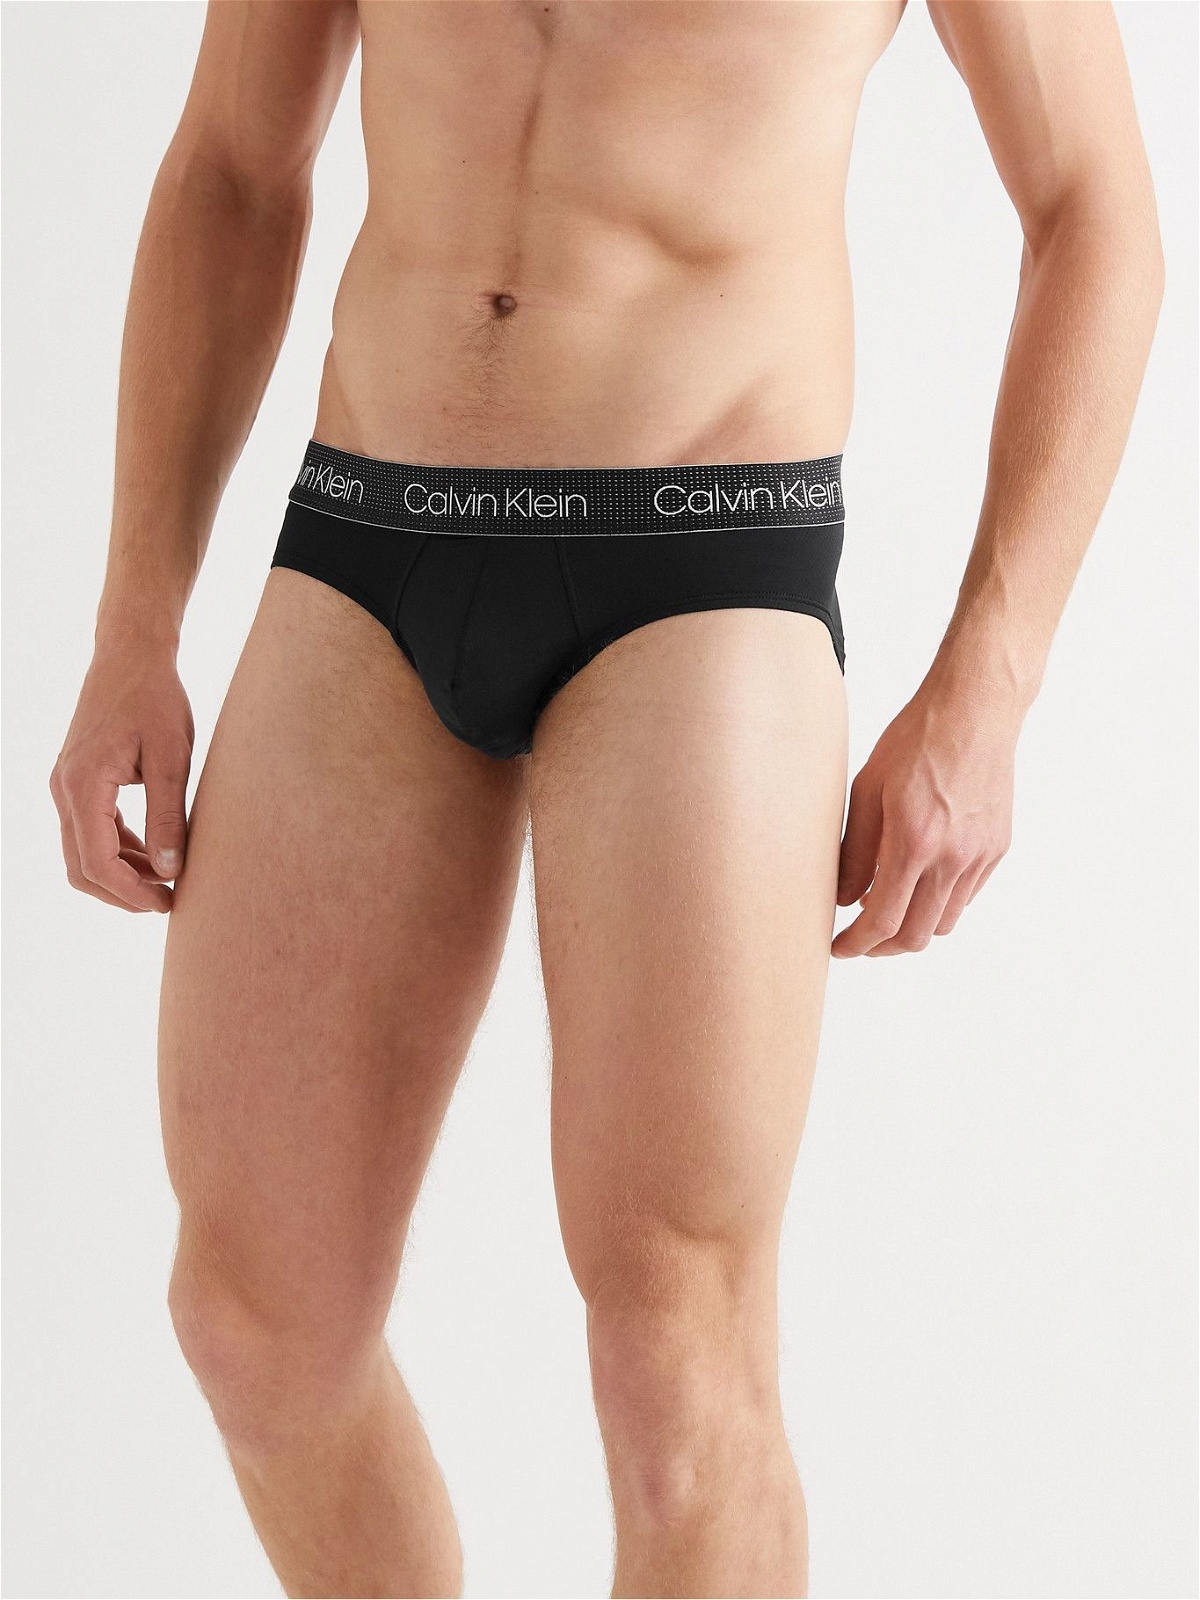 calvinklein on X: Introducing Air FX by Calvin Klein Underwear